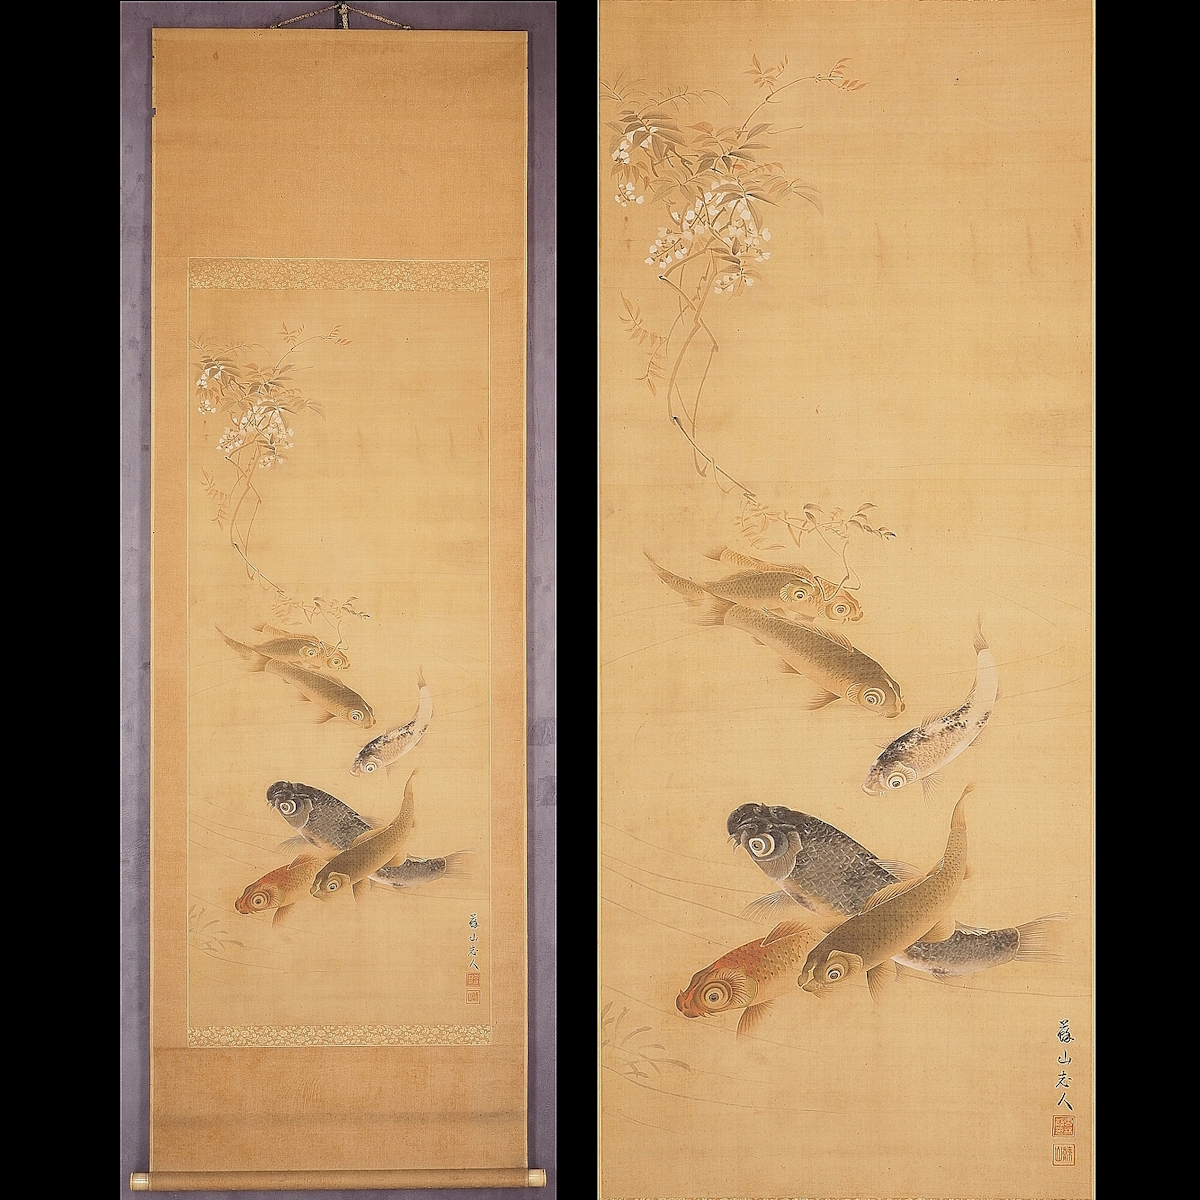 [असली] [वातारिकन] [अनरिन-इन सोज़ान] 6625 लटकता हुआ स्क्रॉल जापानी पेंटिंग कोइ कार्प चित्र संयुक्त बॉक्स रेशम फूल और पक्षी चित्र कुमामोटो हिगो मास्टर काजीयामा कुगाकु फूचिनो कीसेन अंकित, चित्रकारी, जापानी चित्रकला, फूल और पक्षी, वन्यजीव